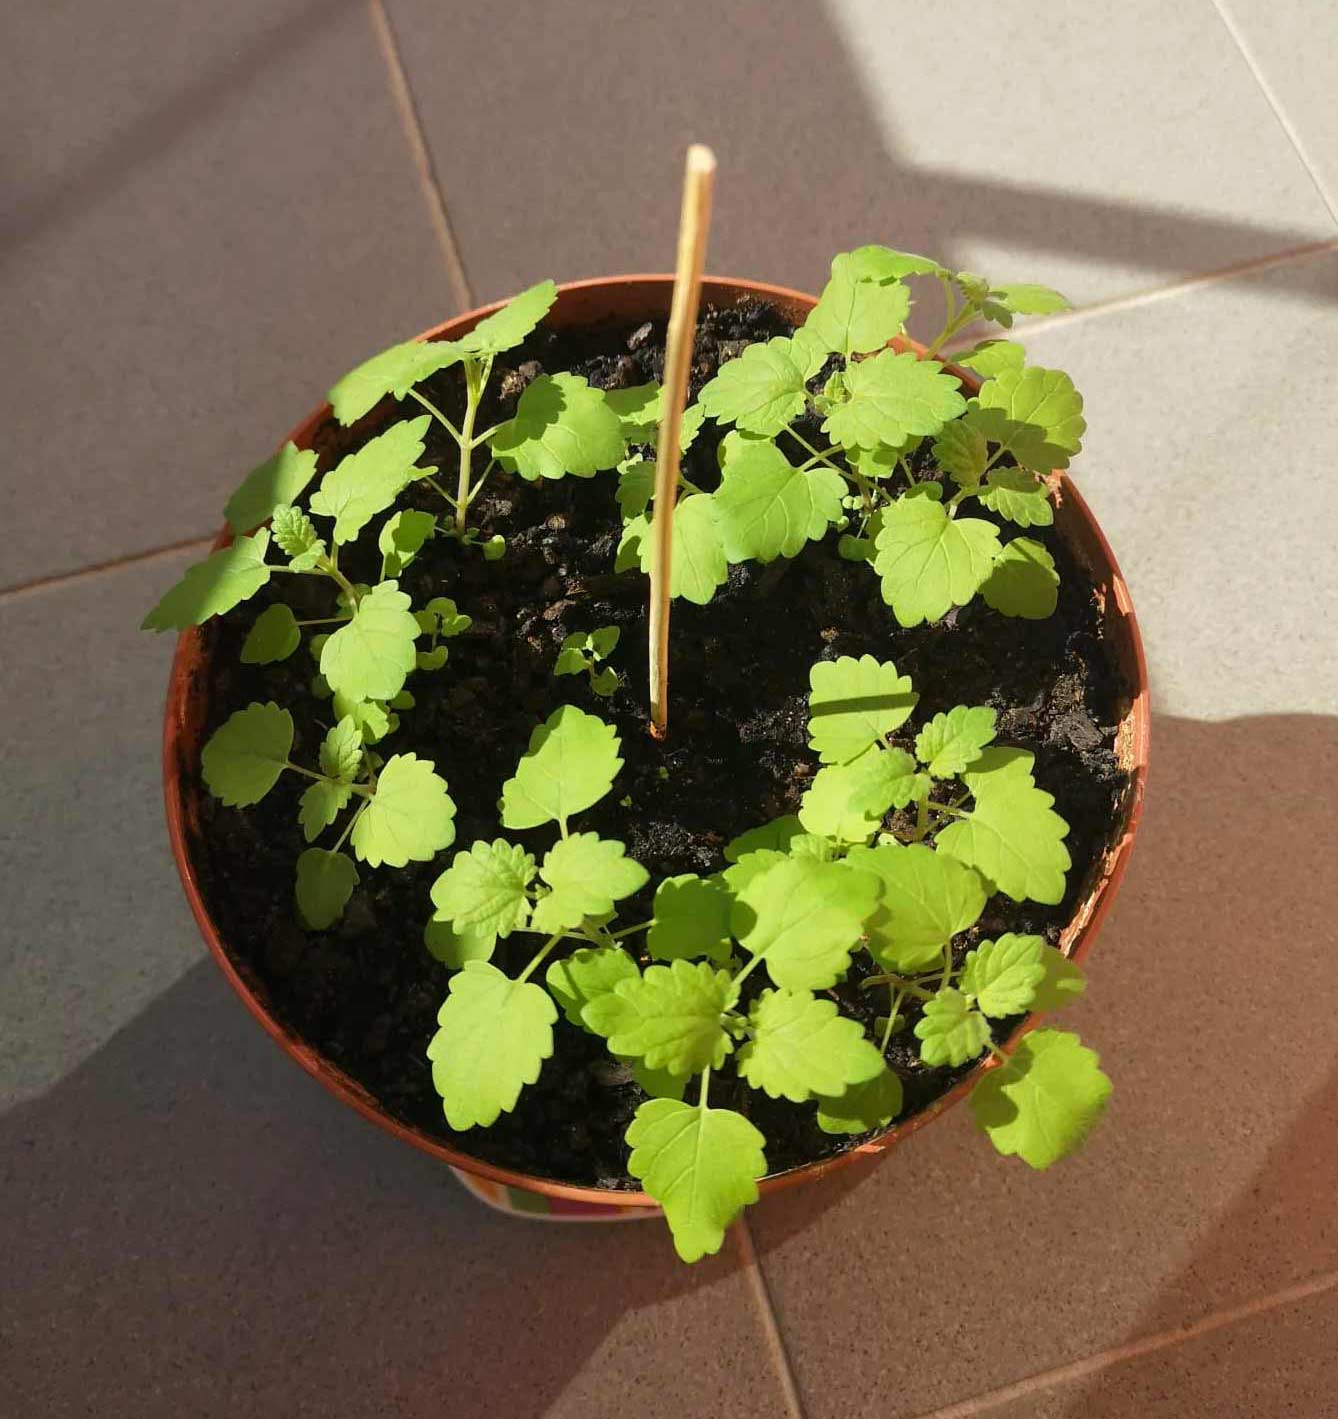 Catnip (Nepeta cataria) plant in a pot